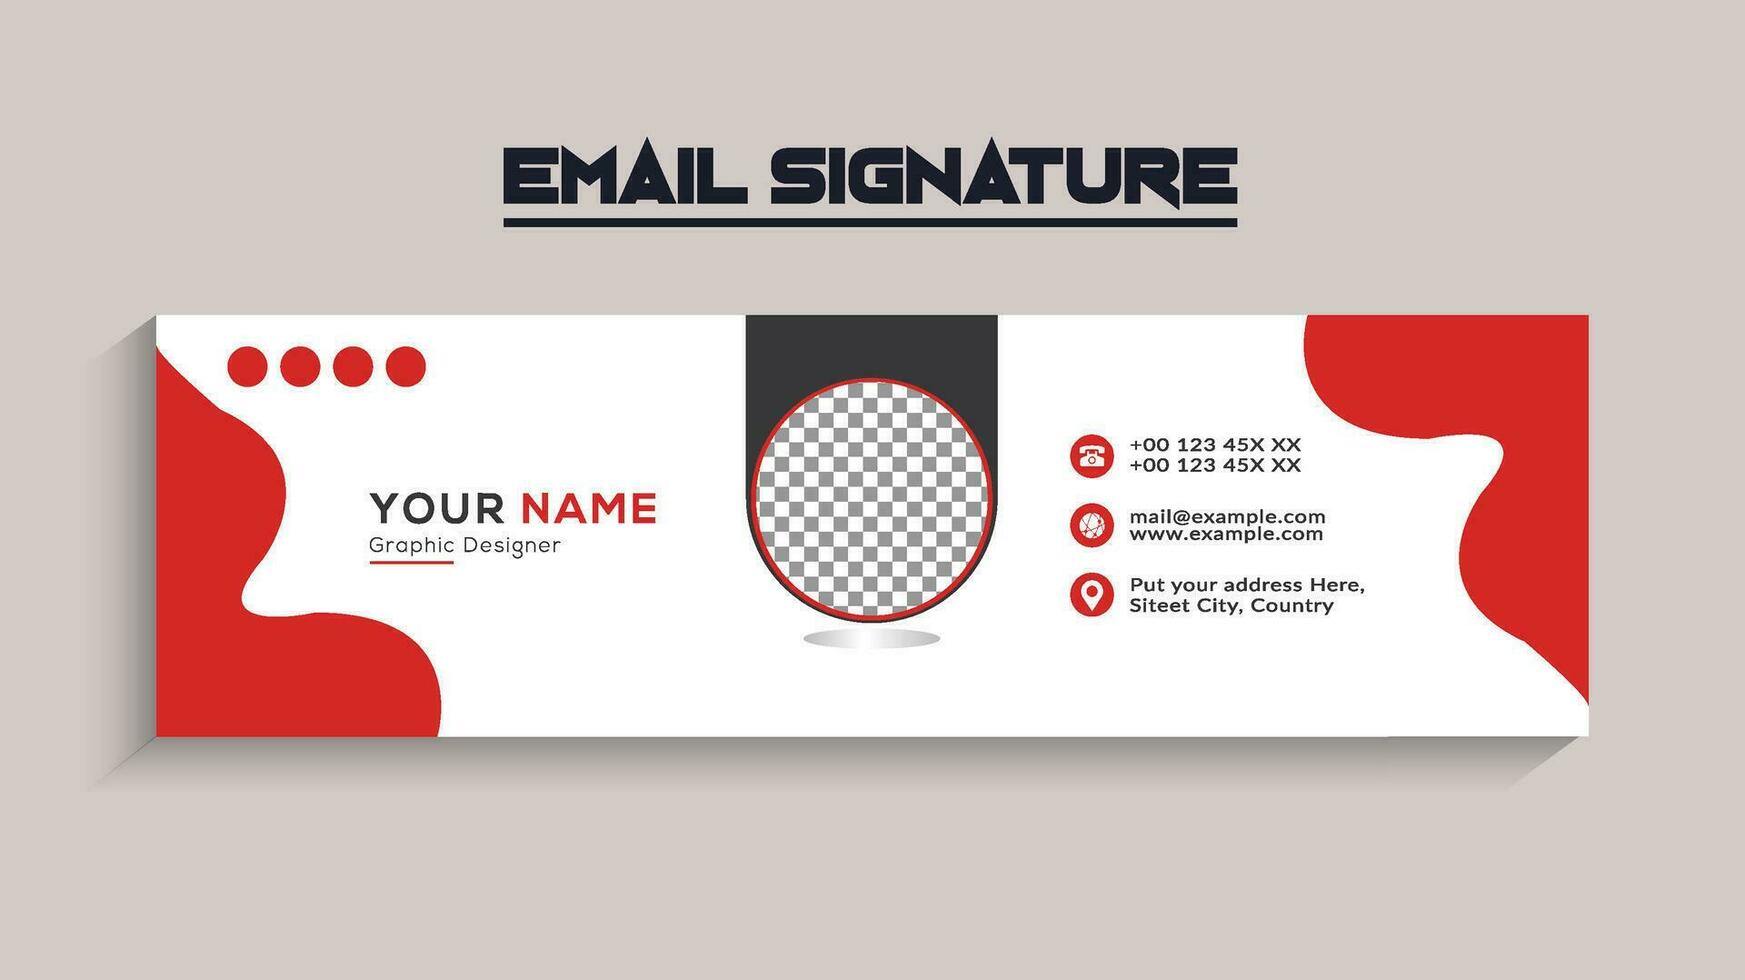 entreprise, moderne et professionnel email signature. vecteur